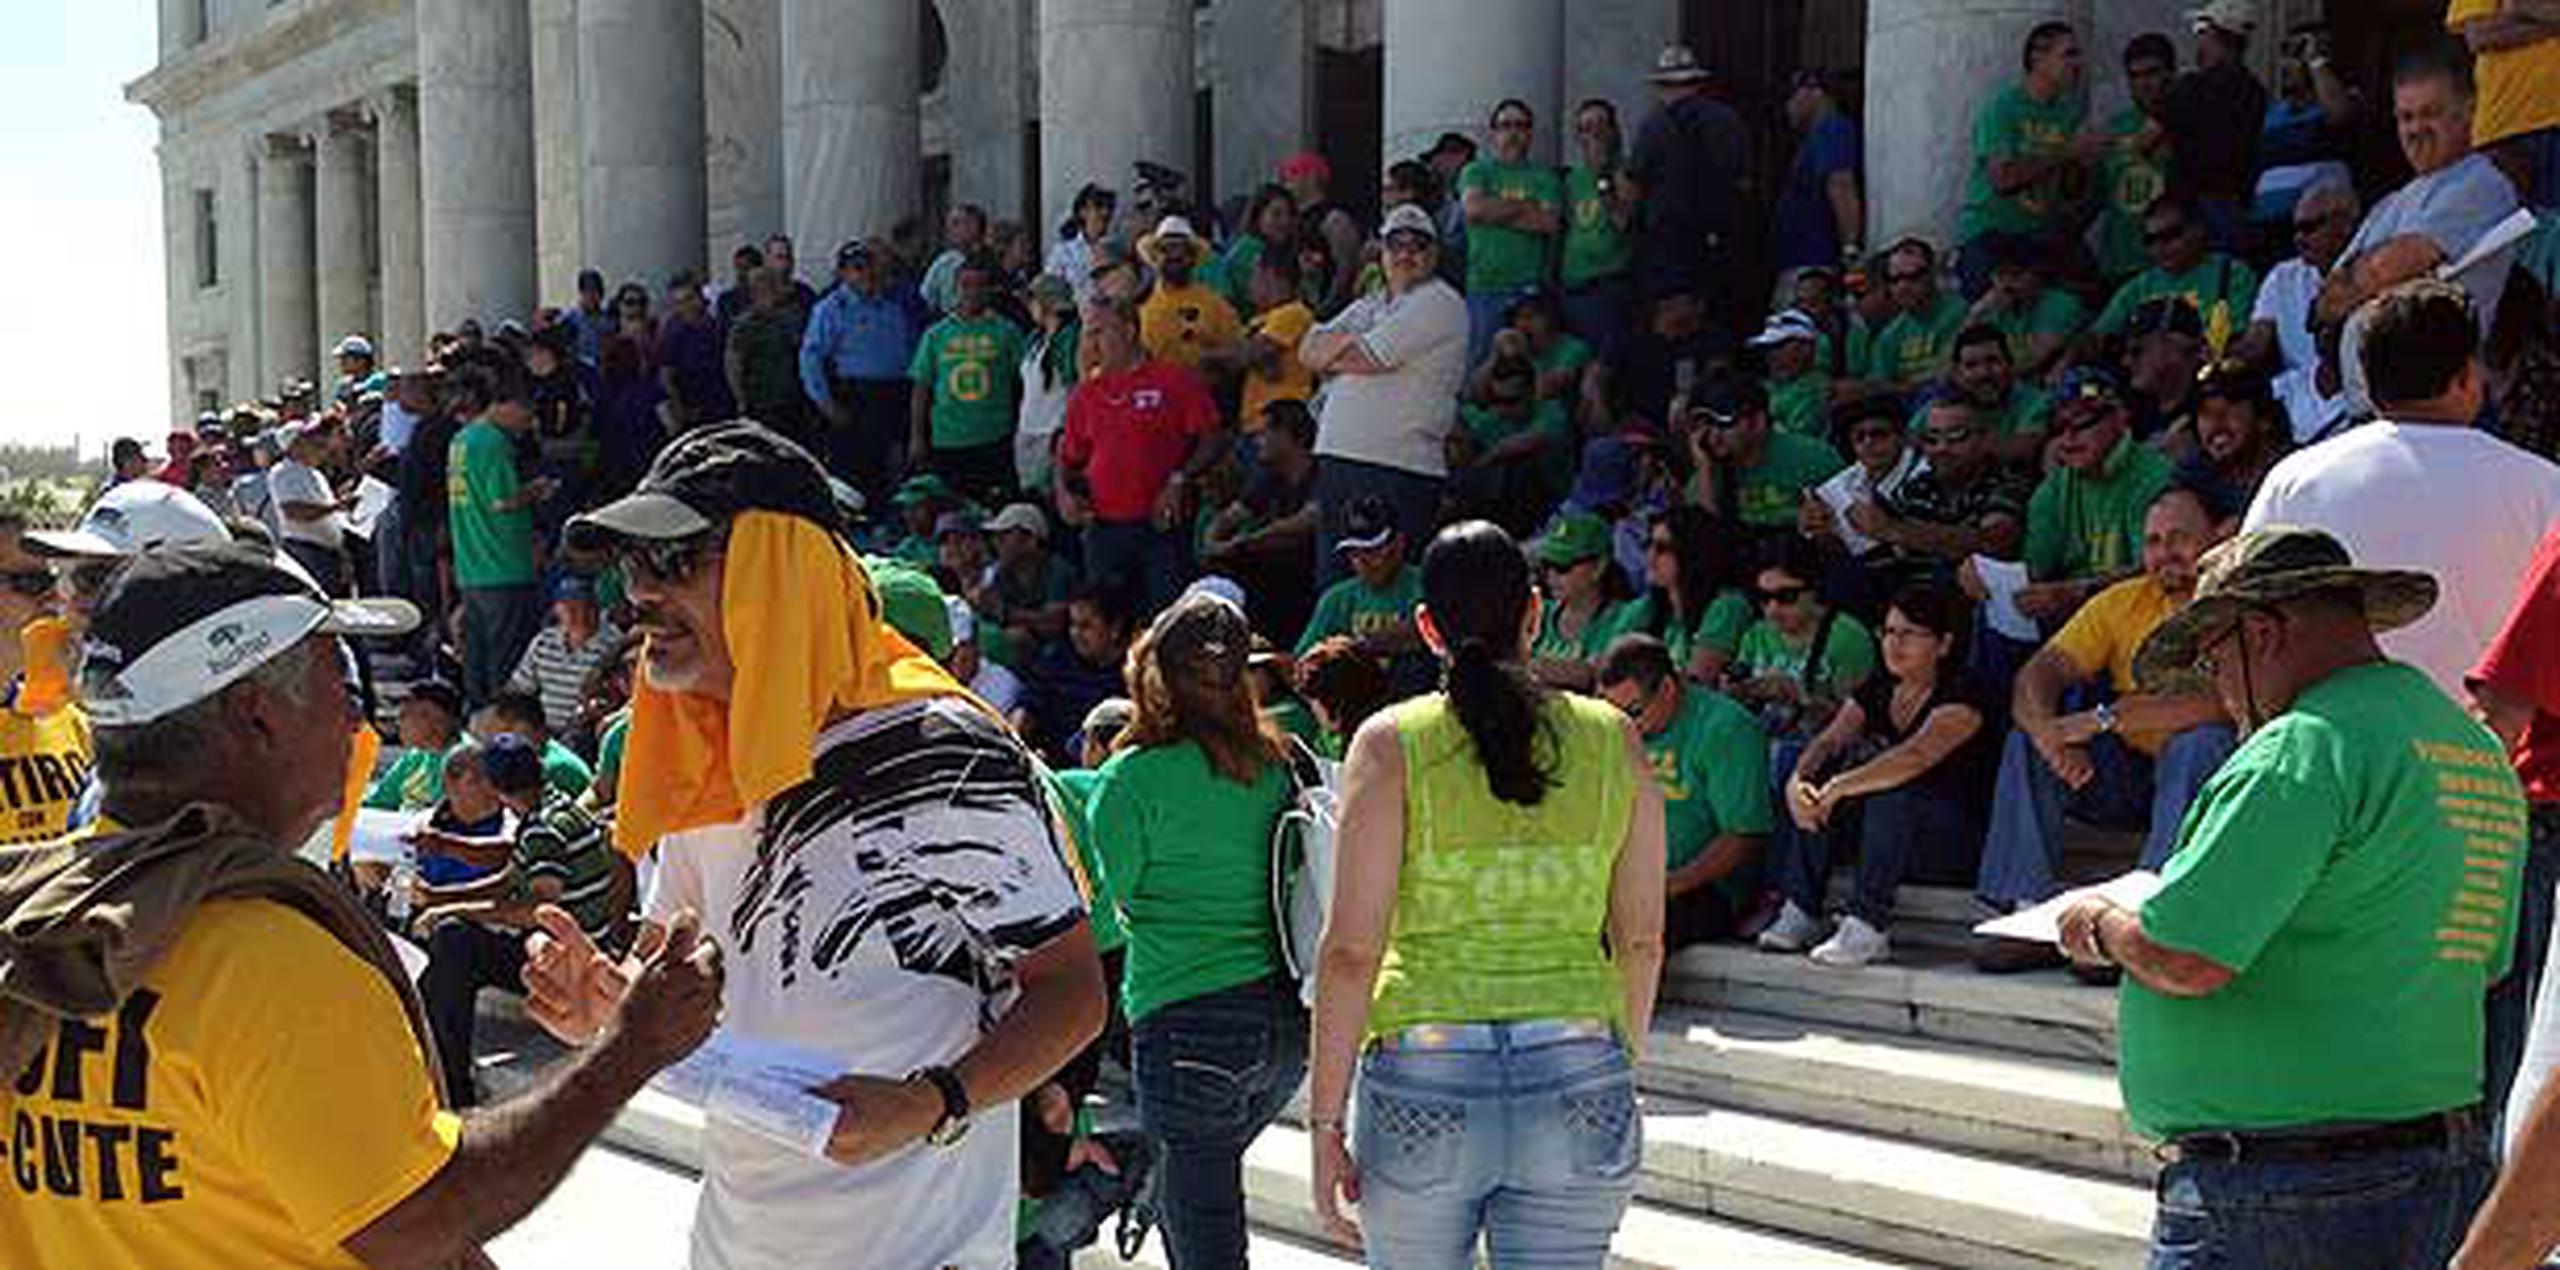 Los empleados públicos celebraron con una ovación el comunicado de prensa enviado por la alcaldesa de San Juan, Carmen Yulín Cruz, quien hizo un llamado a los legisladores a no aprobar la media hasta que no se establezca un diálogo con los sindicatos. (alex.figueroa@gfrmedia.com)